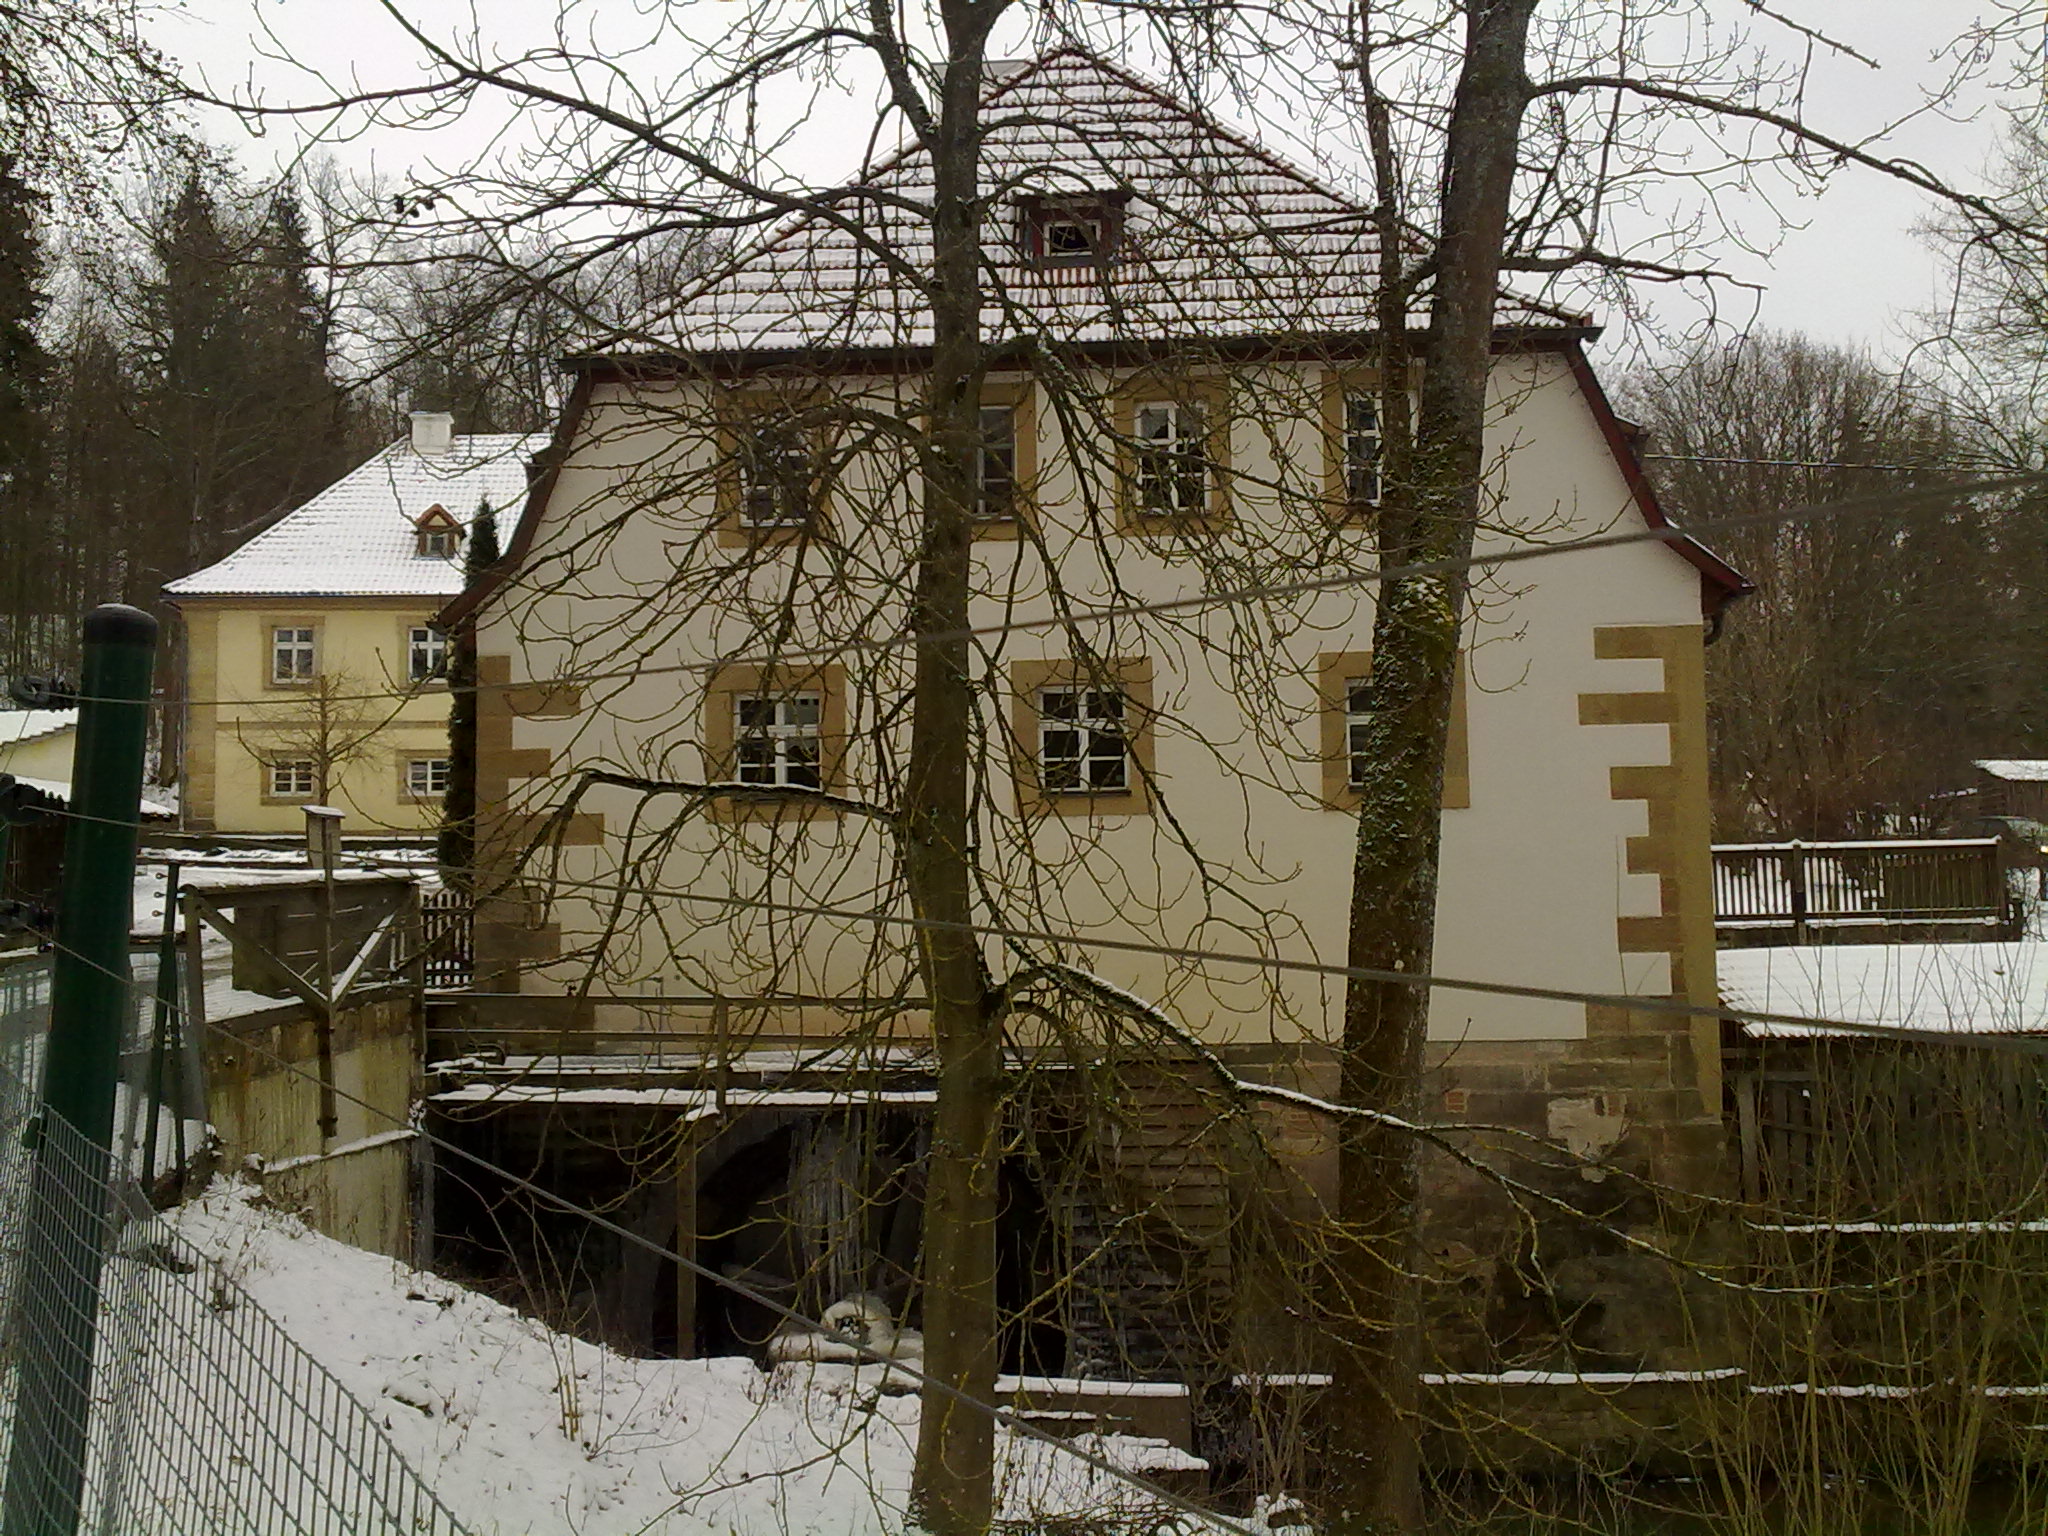 Mühle Tambach im Wildpark m Mühlrad in Aktion